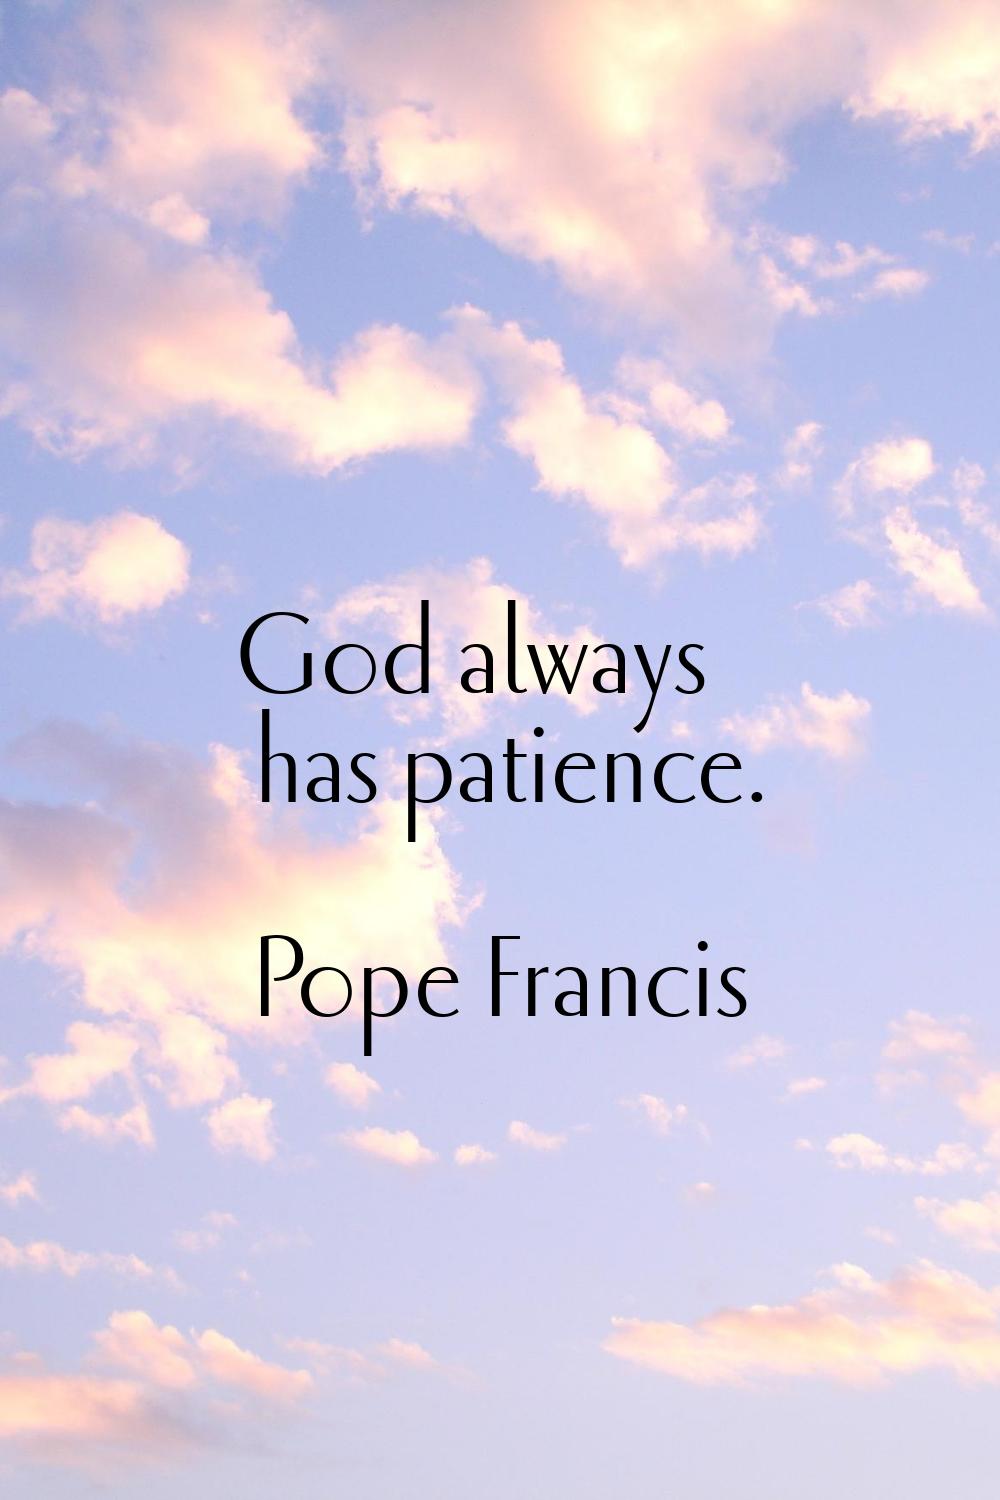 God always has patience.